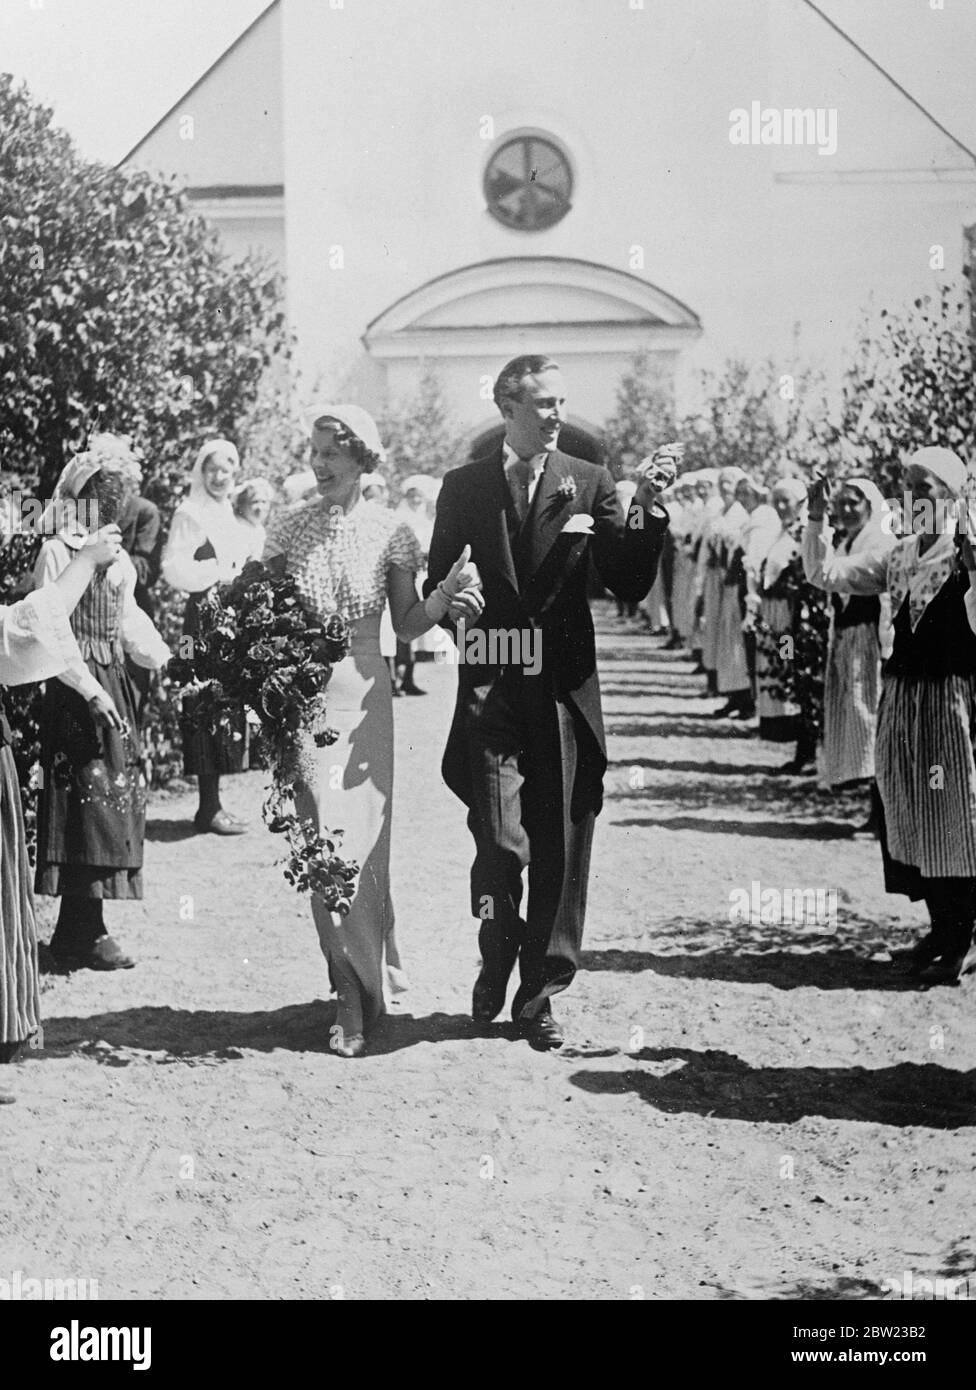 Il principe Carlo di Svezia lascia la chiesa con la sposa dopo il matrimonio . Rinunciando al suo titolo e alle sue prerogative come membro della famiglia reale svedese, il principe Carlo , nipote del re di Svezia, fu sposato a Stoccolma con la contessa Elsa von Rosen. 8 luglio 1937. Foto Stock